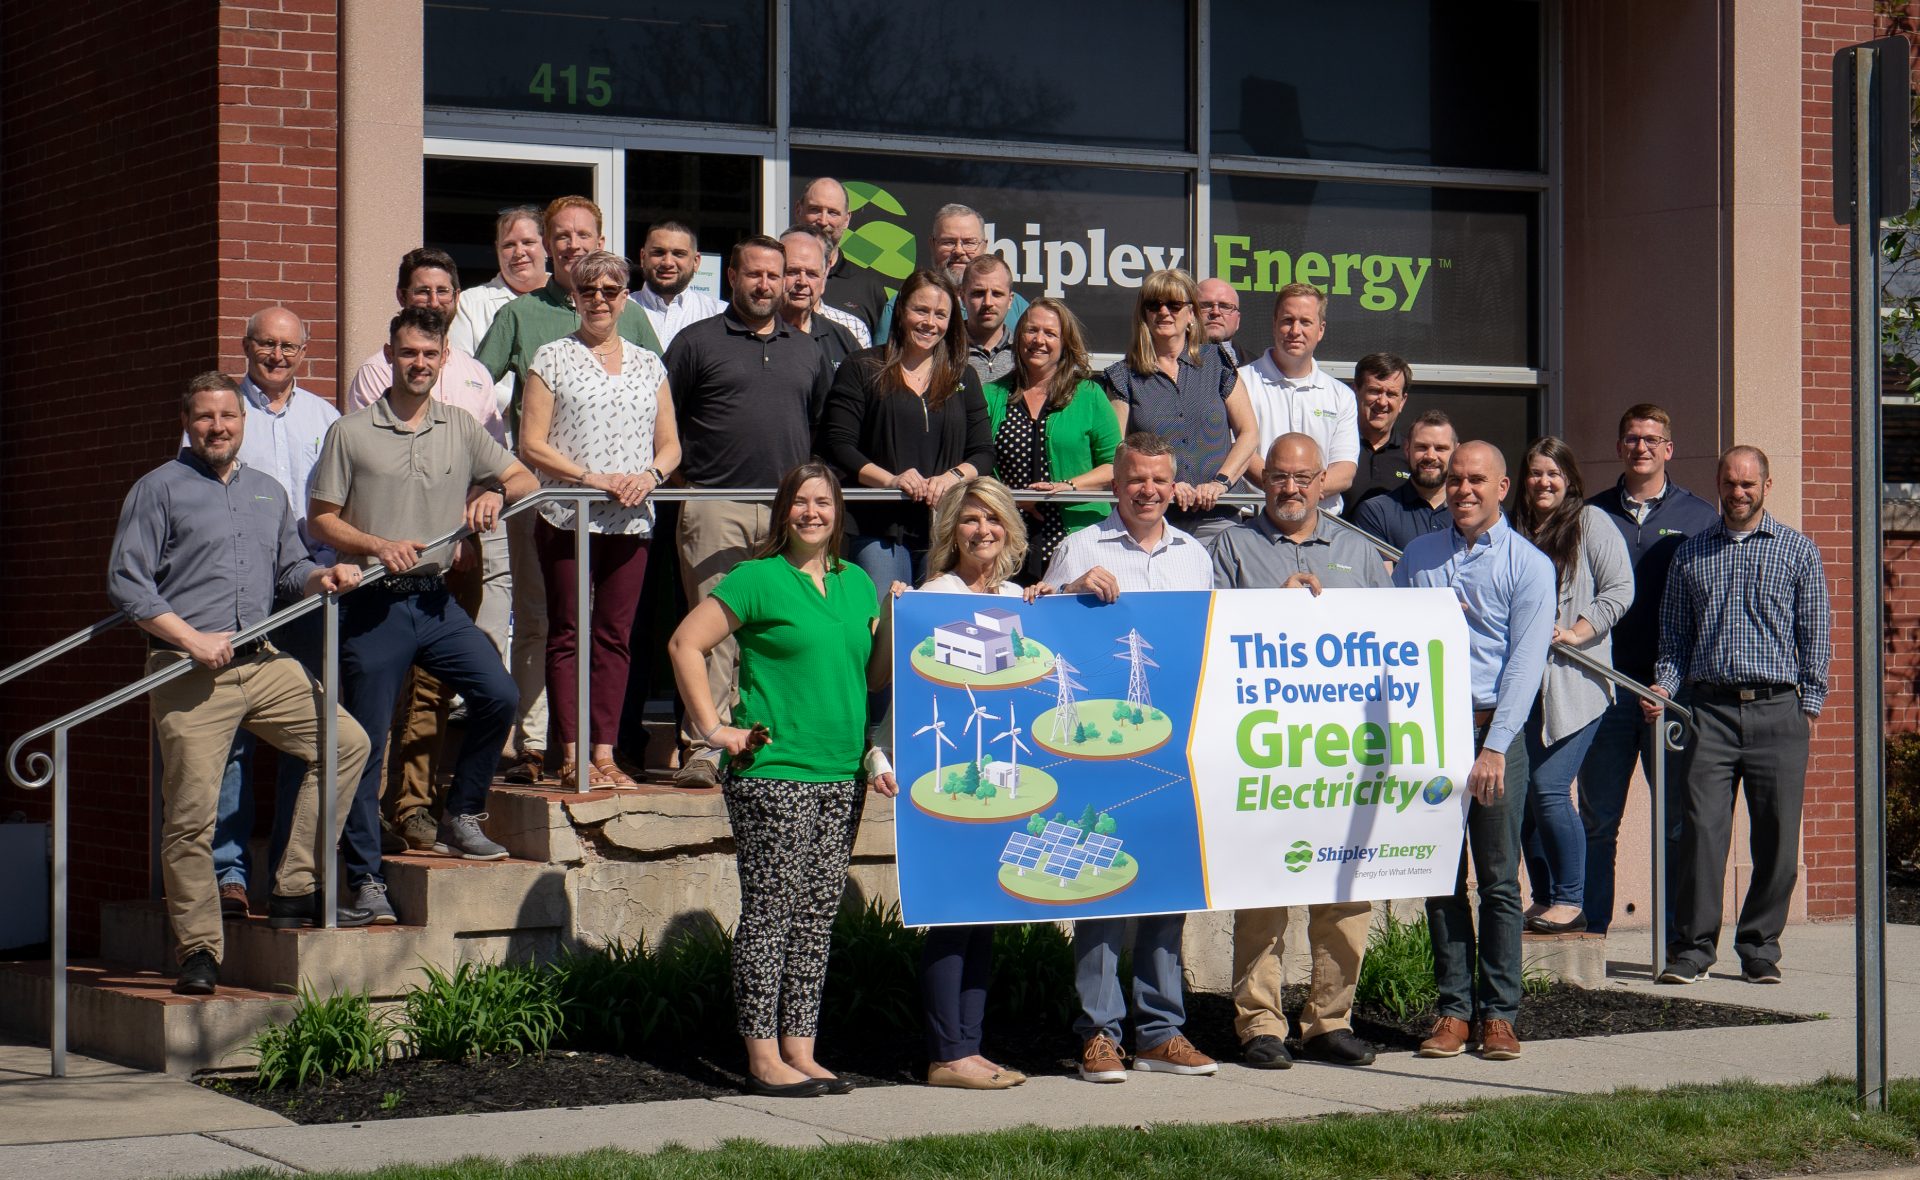 shipley energy employees smiling